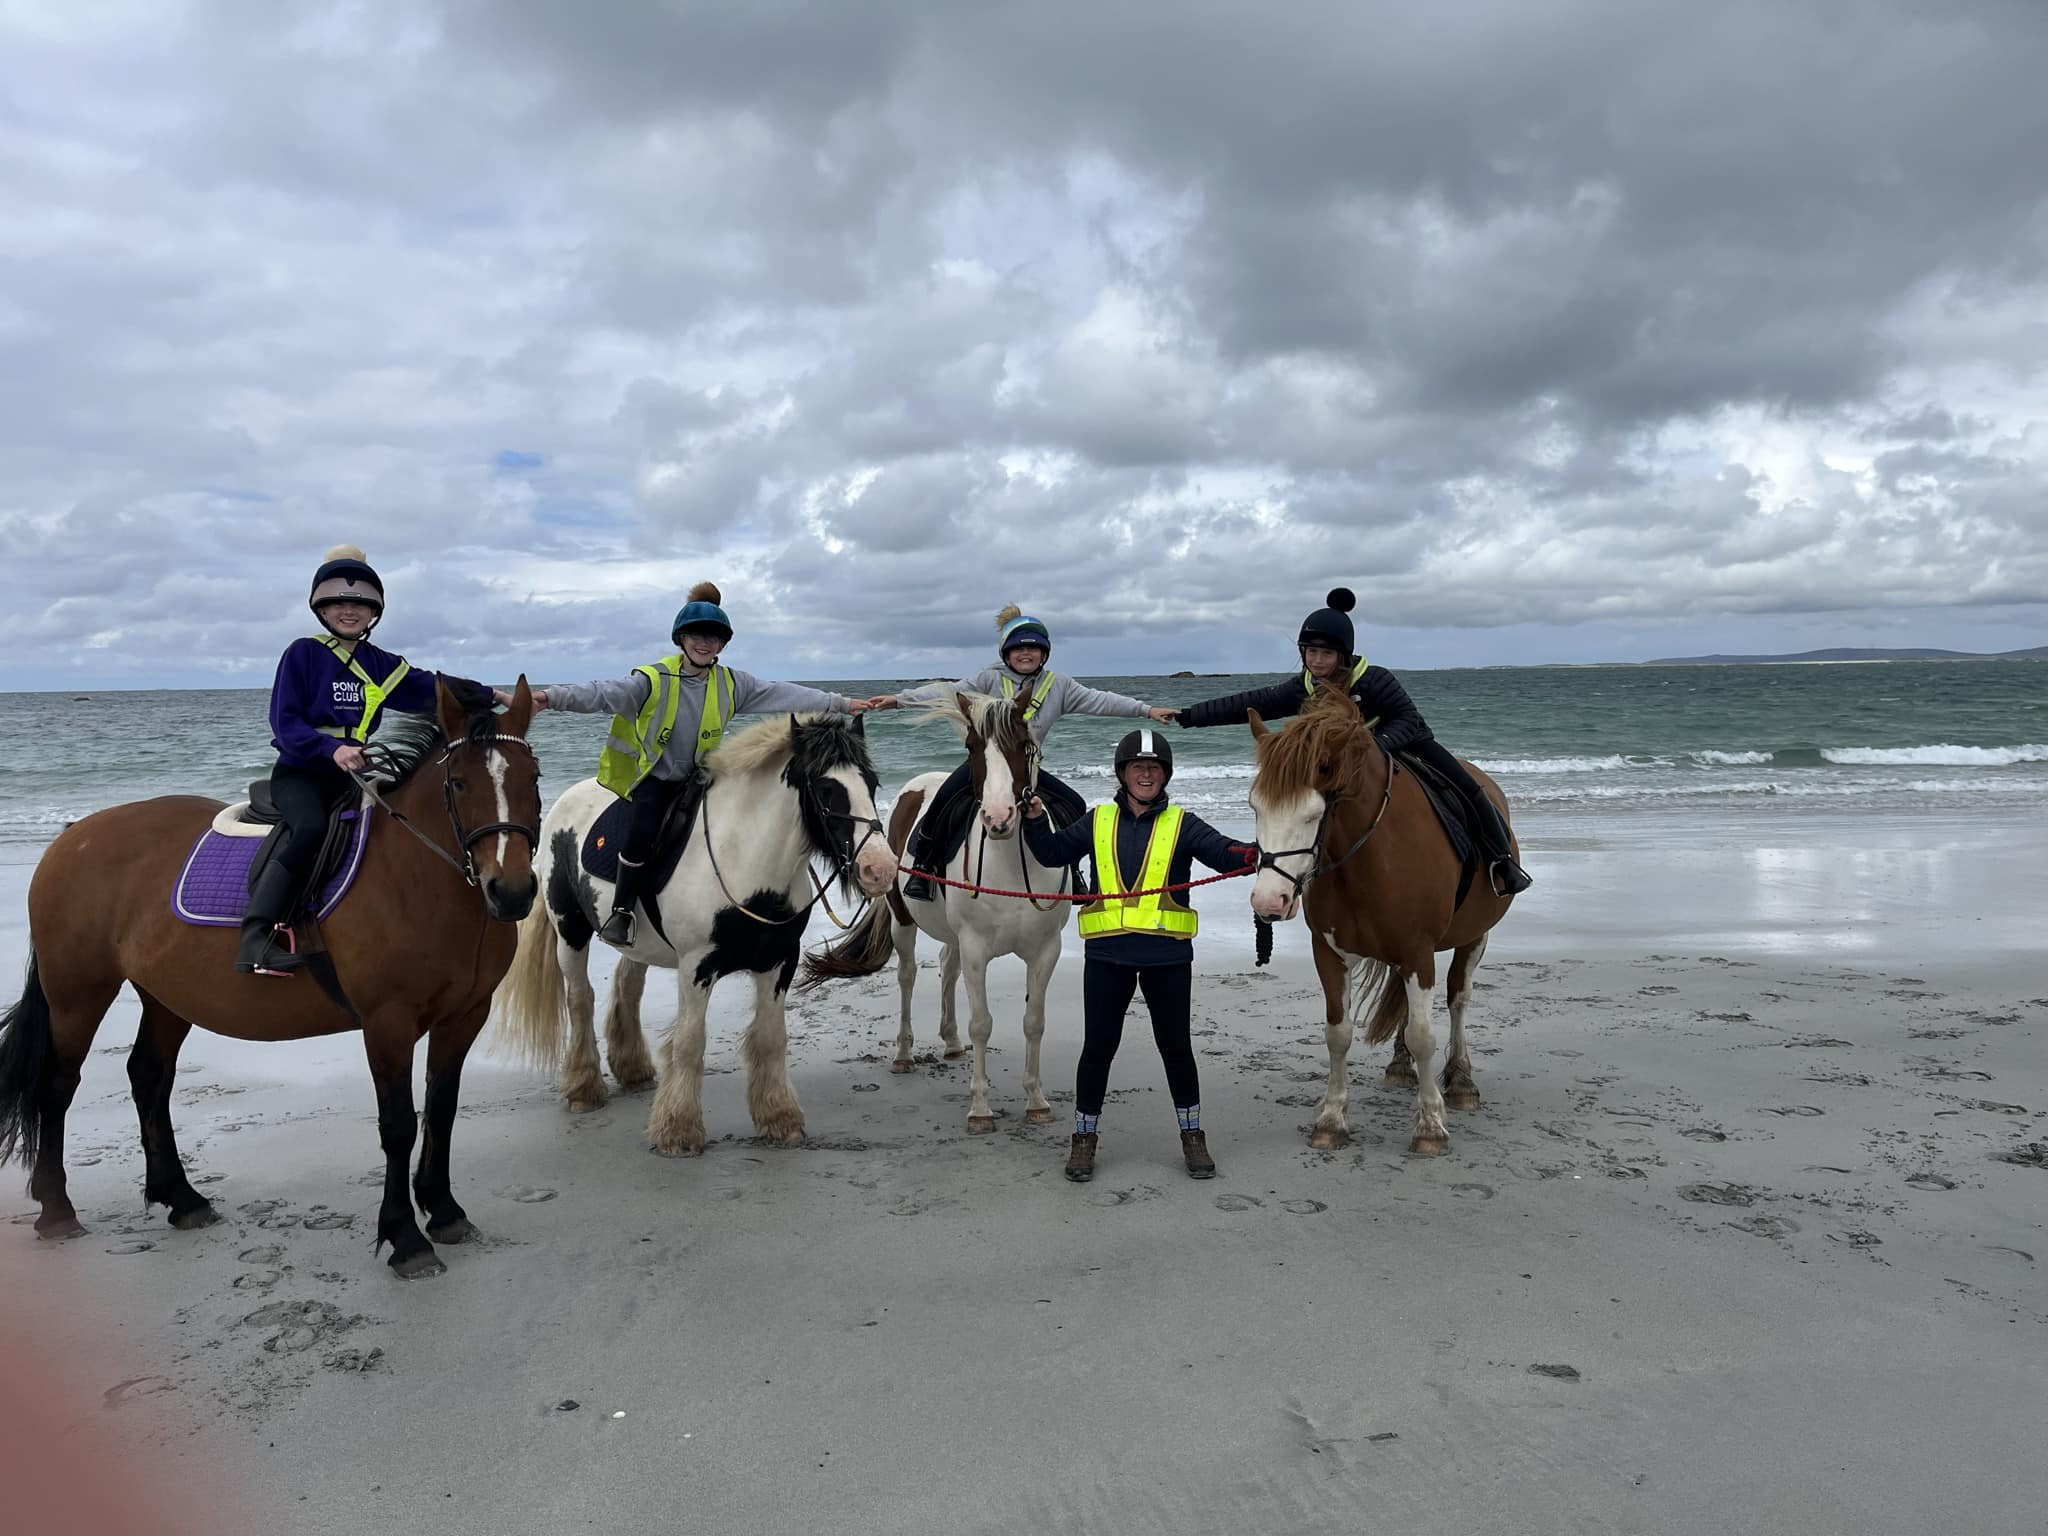 Horses on beach